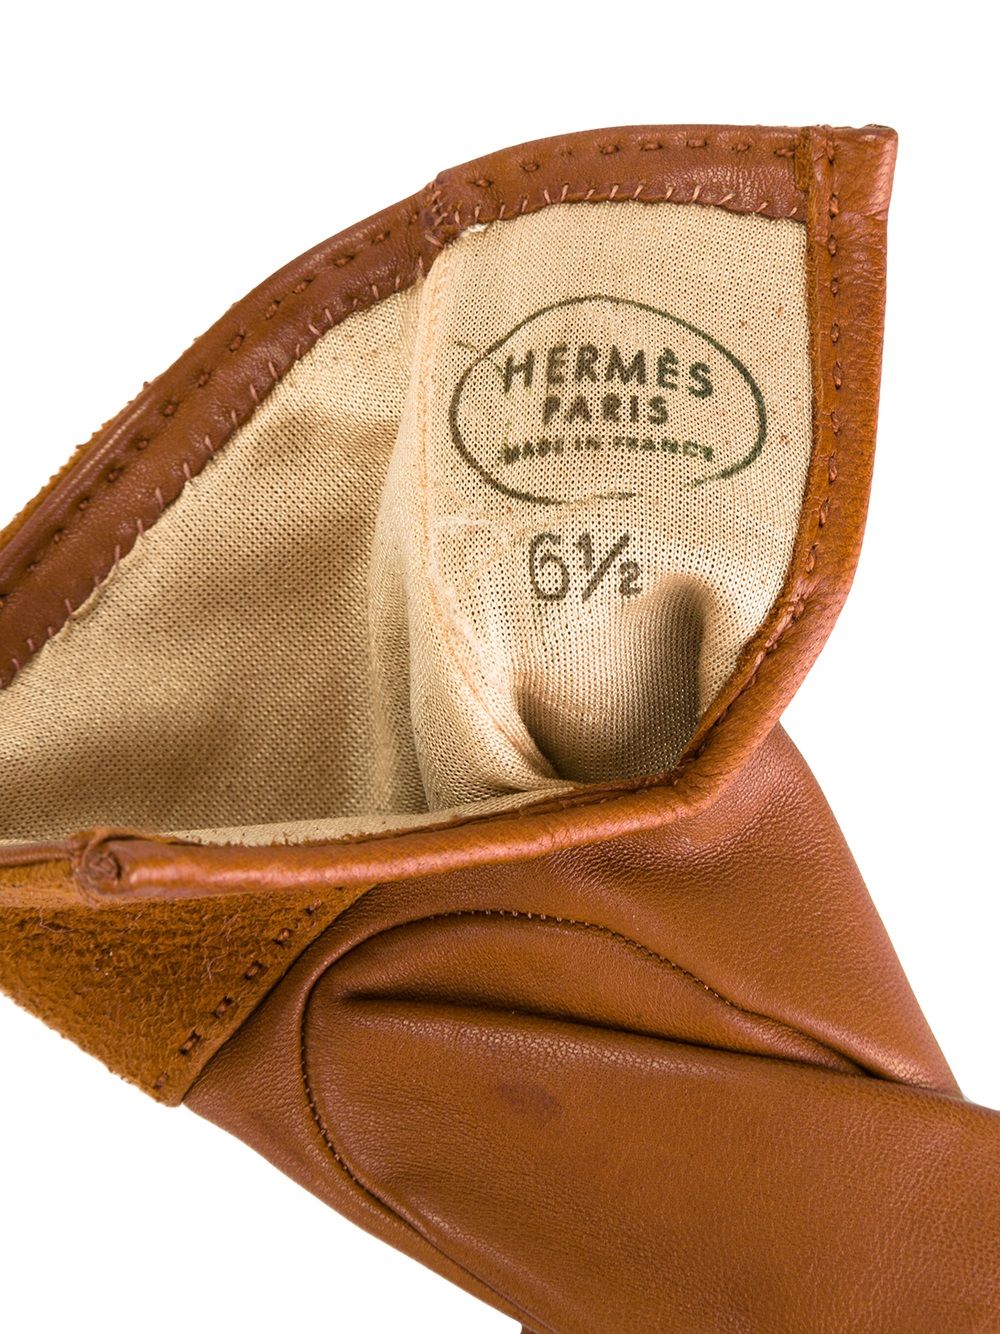 фото Hermès кожаные перчатки